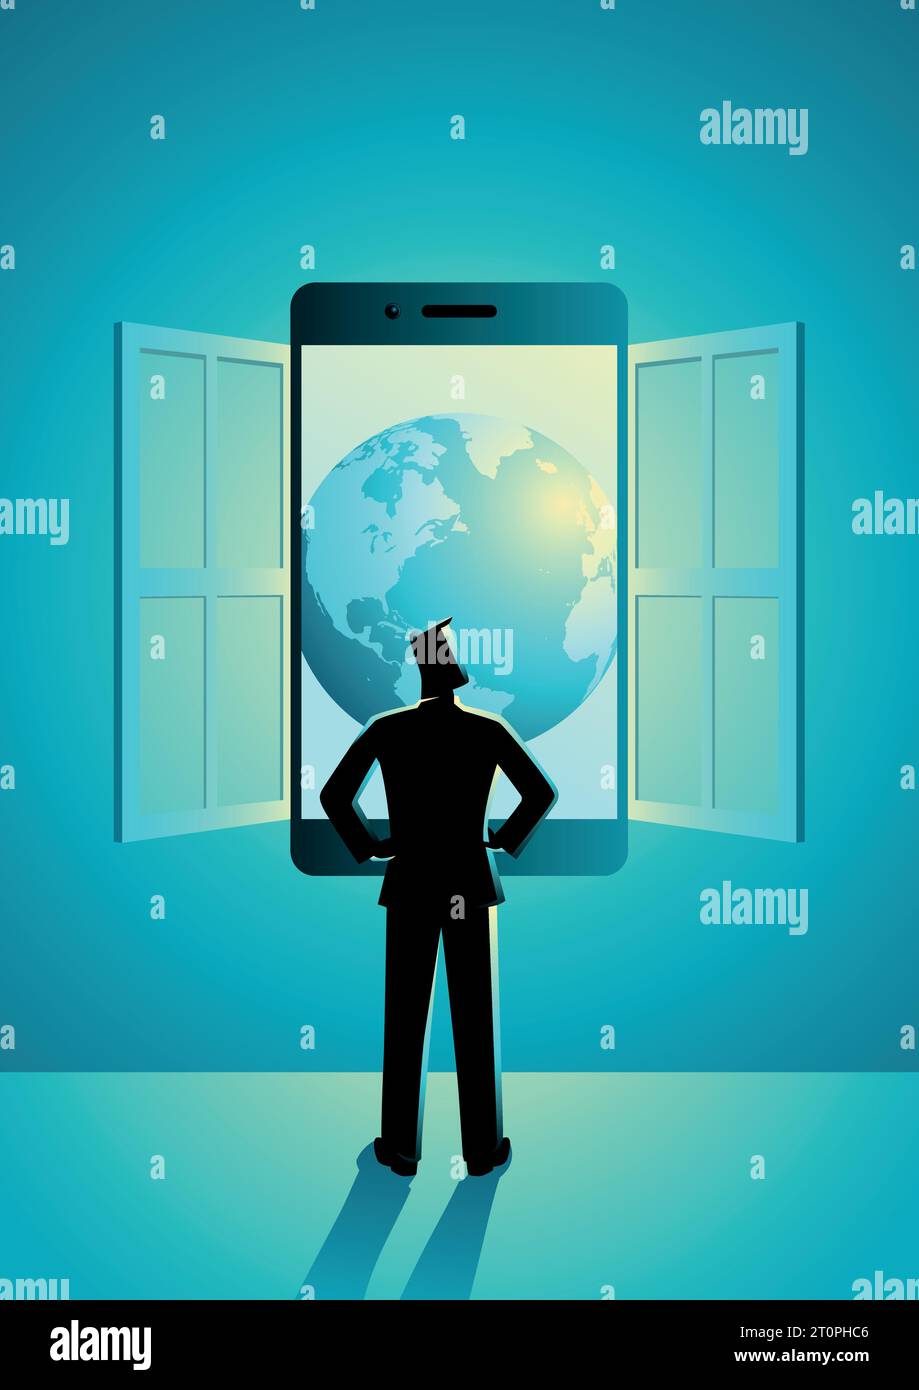 Illustrazione del concetto di business di un uomo d'affari che guarda attraverso la finestra realizzata con uno smartphone. Tecnologia moderna, conoscenza, concep del mondo digitale Illustrazione Vettoriale